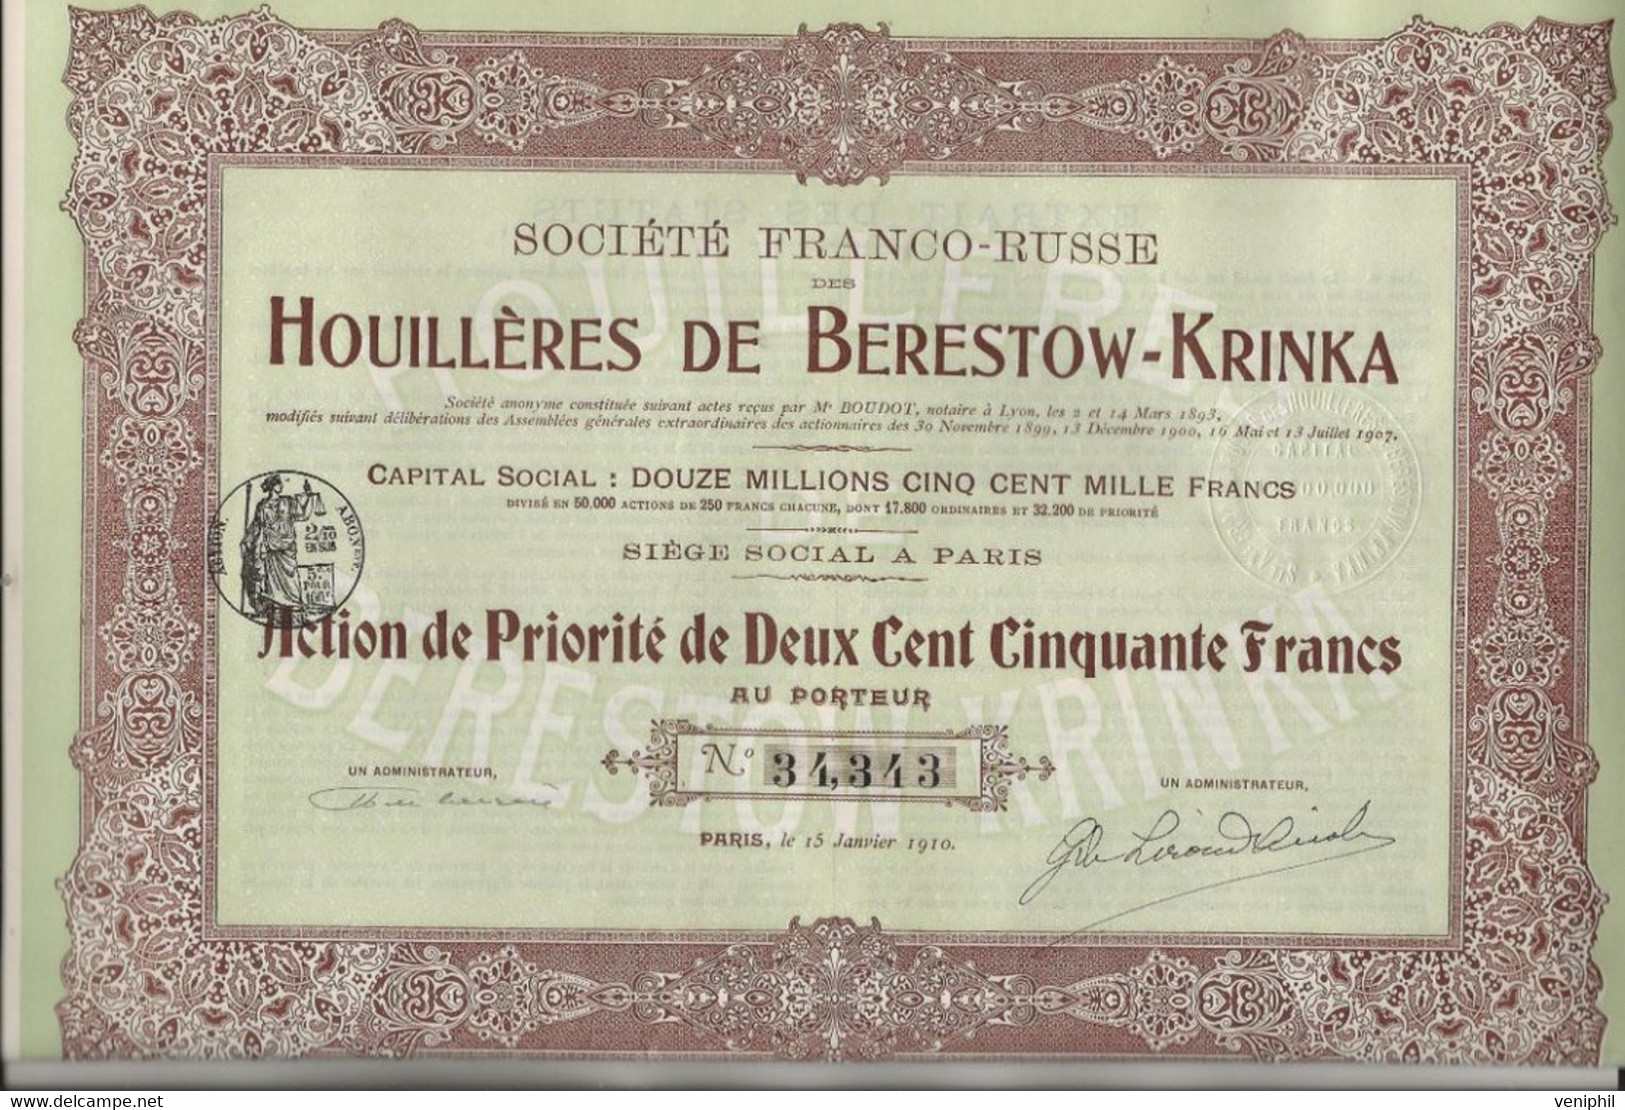 SOCIETE FRANCO -RUSSE DES HOUILLERES DE BERESTOW - KRINKA - LOT DE 3 ACTIONS DE PRIORITE DE 250 FRS -ANNEE 1910 - Mineral